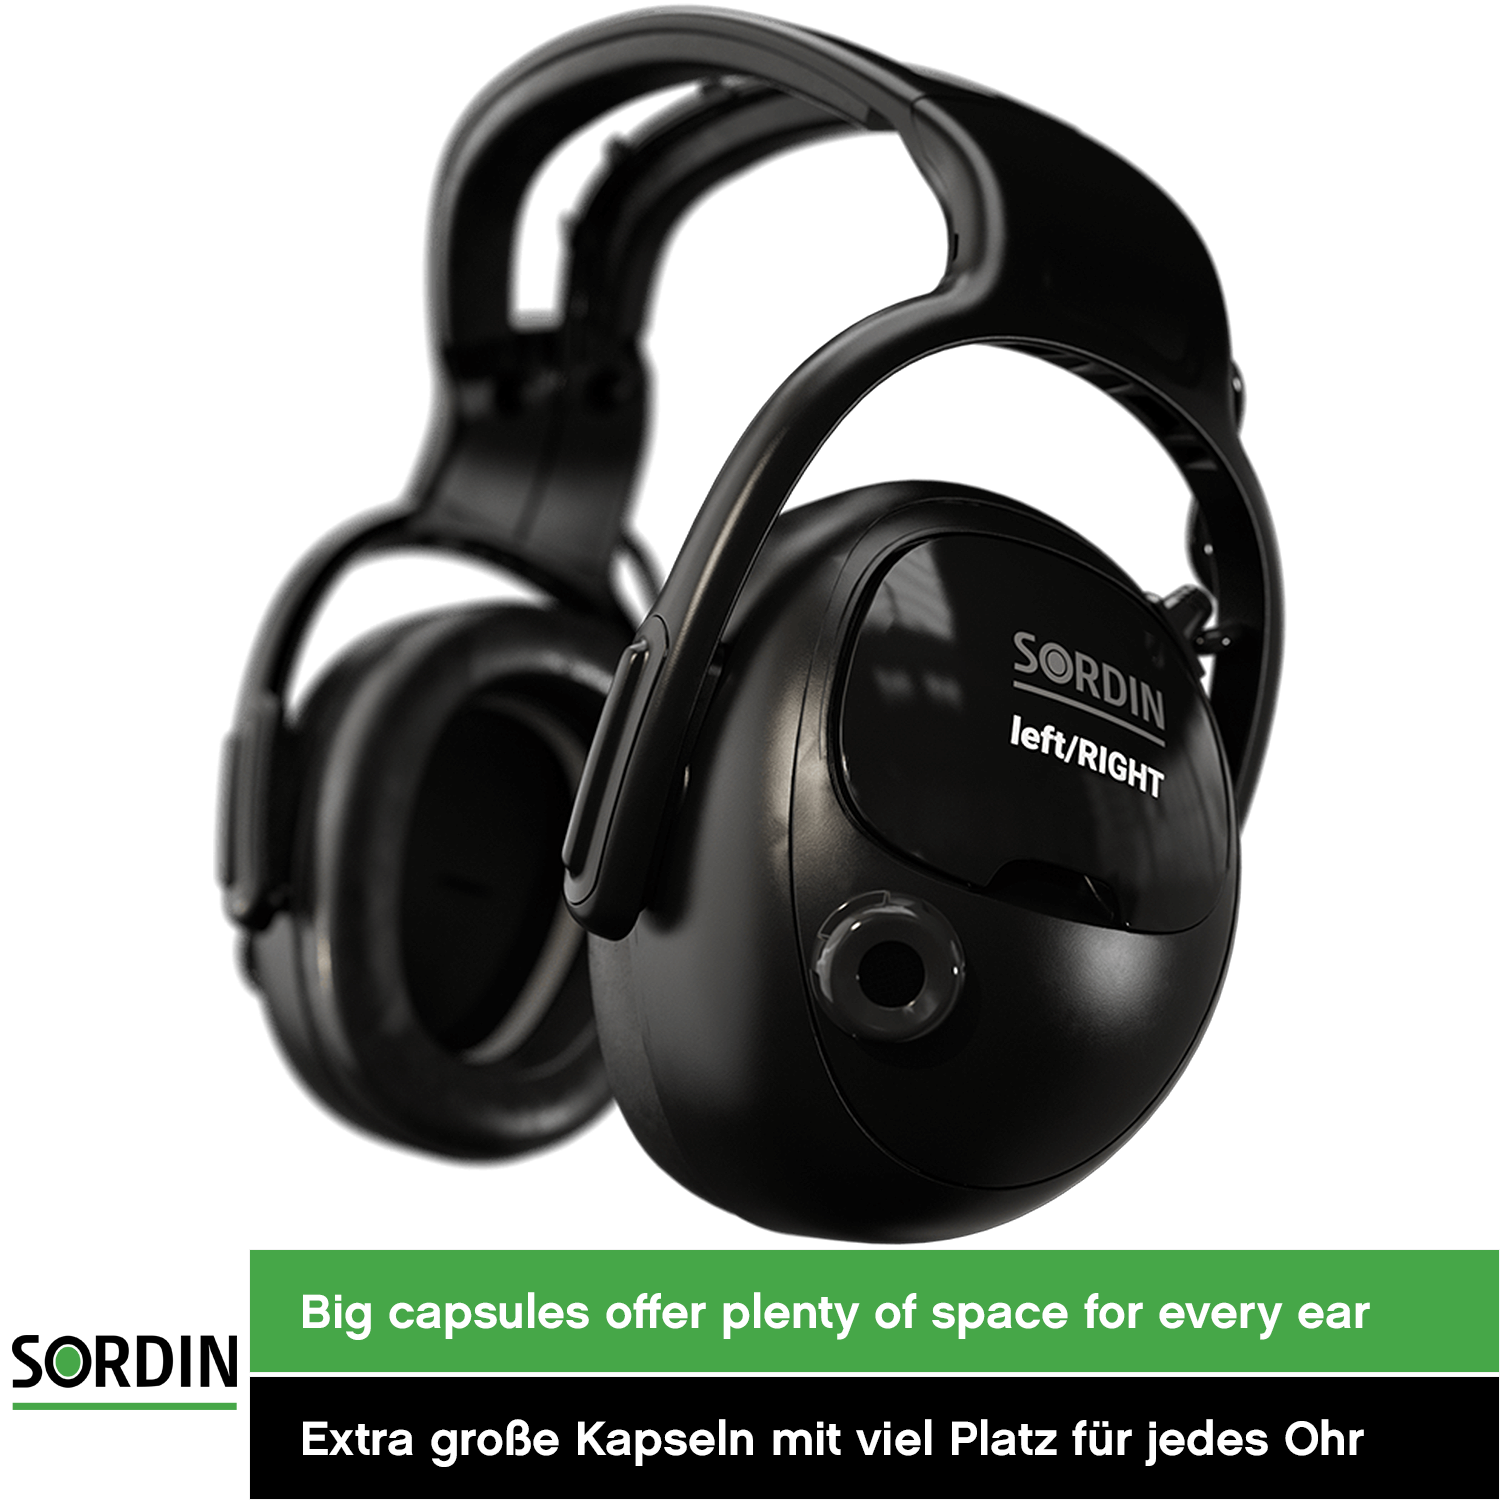 Sordin left/RIGHT CO Pro Kapsel-Gehörschutz - aktiver Ohrenschützer - elektronischer Gehörschützer für die Arbeit